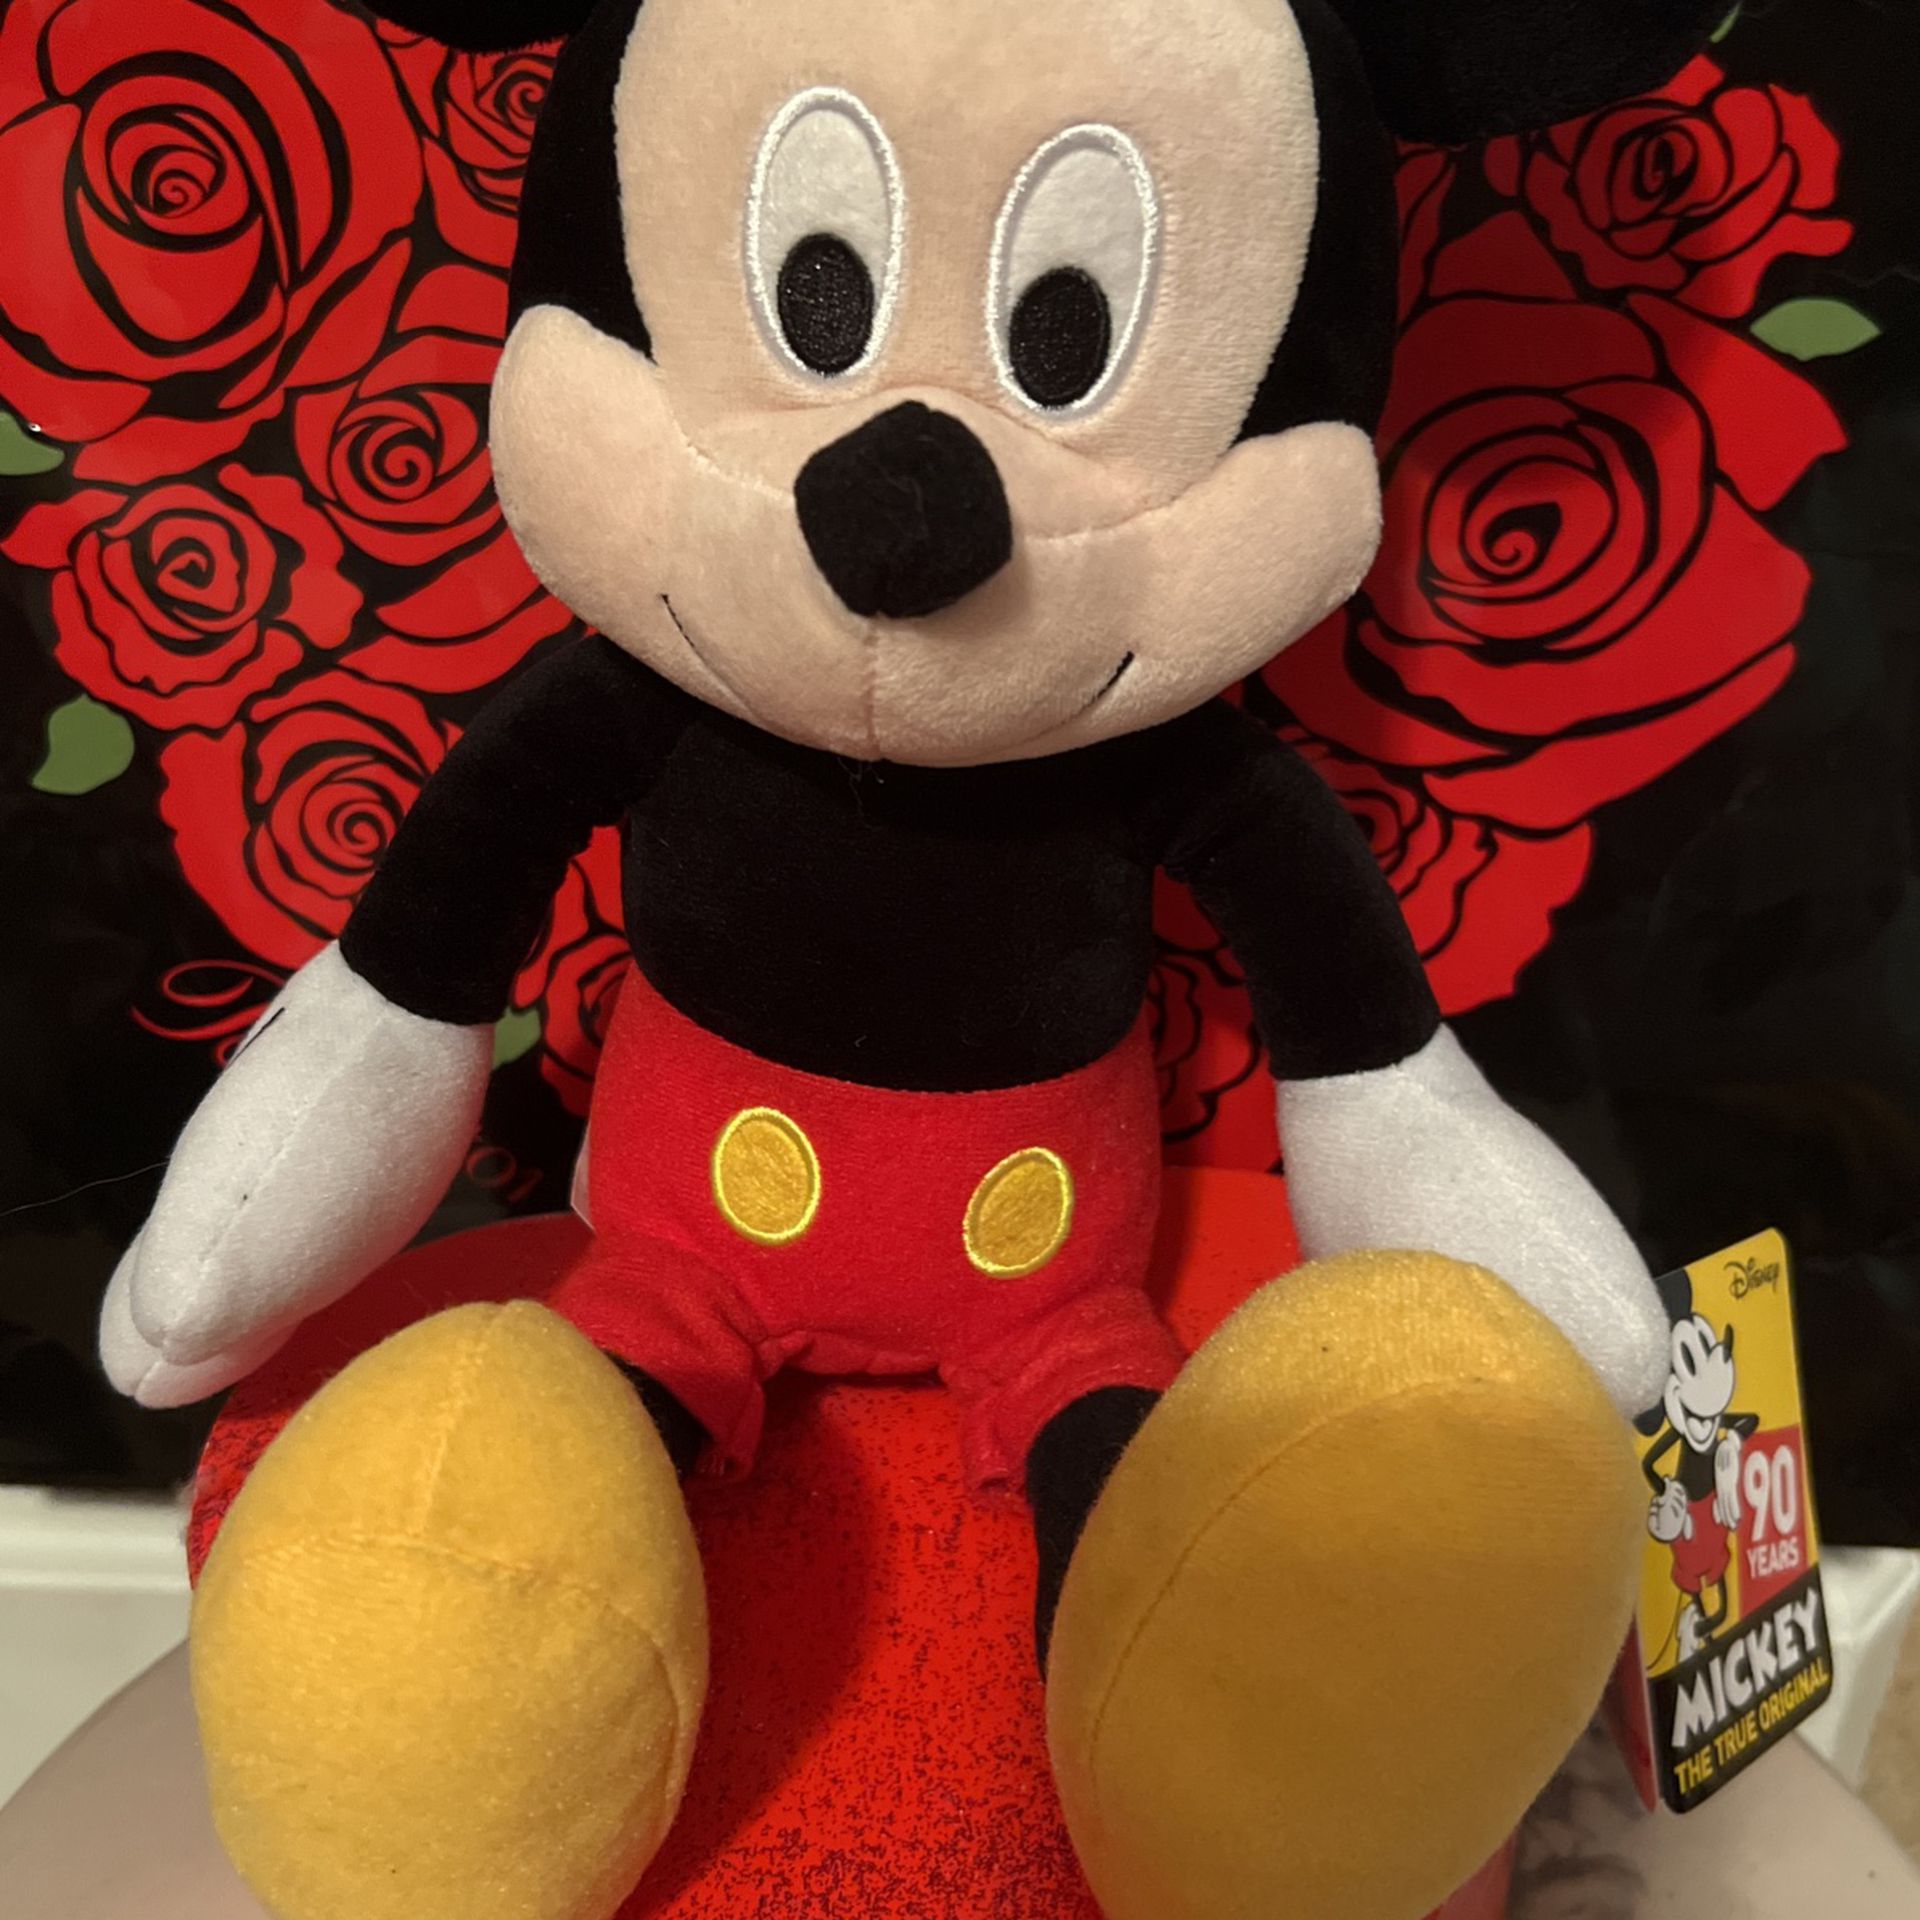 Adorable! Precious! The True Original Disney Mickey Mouse !!!